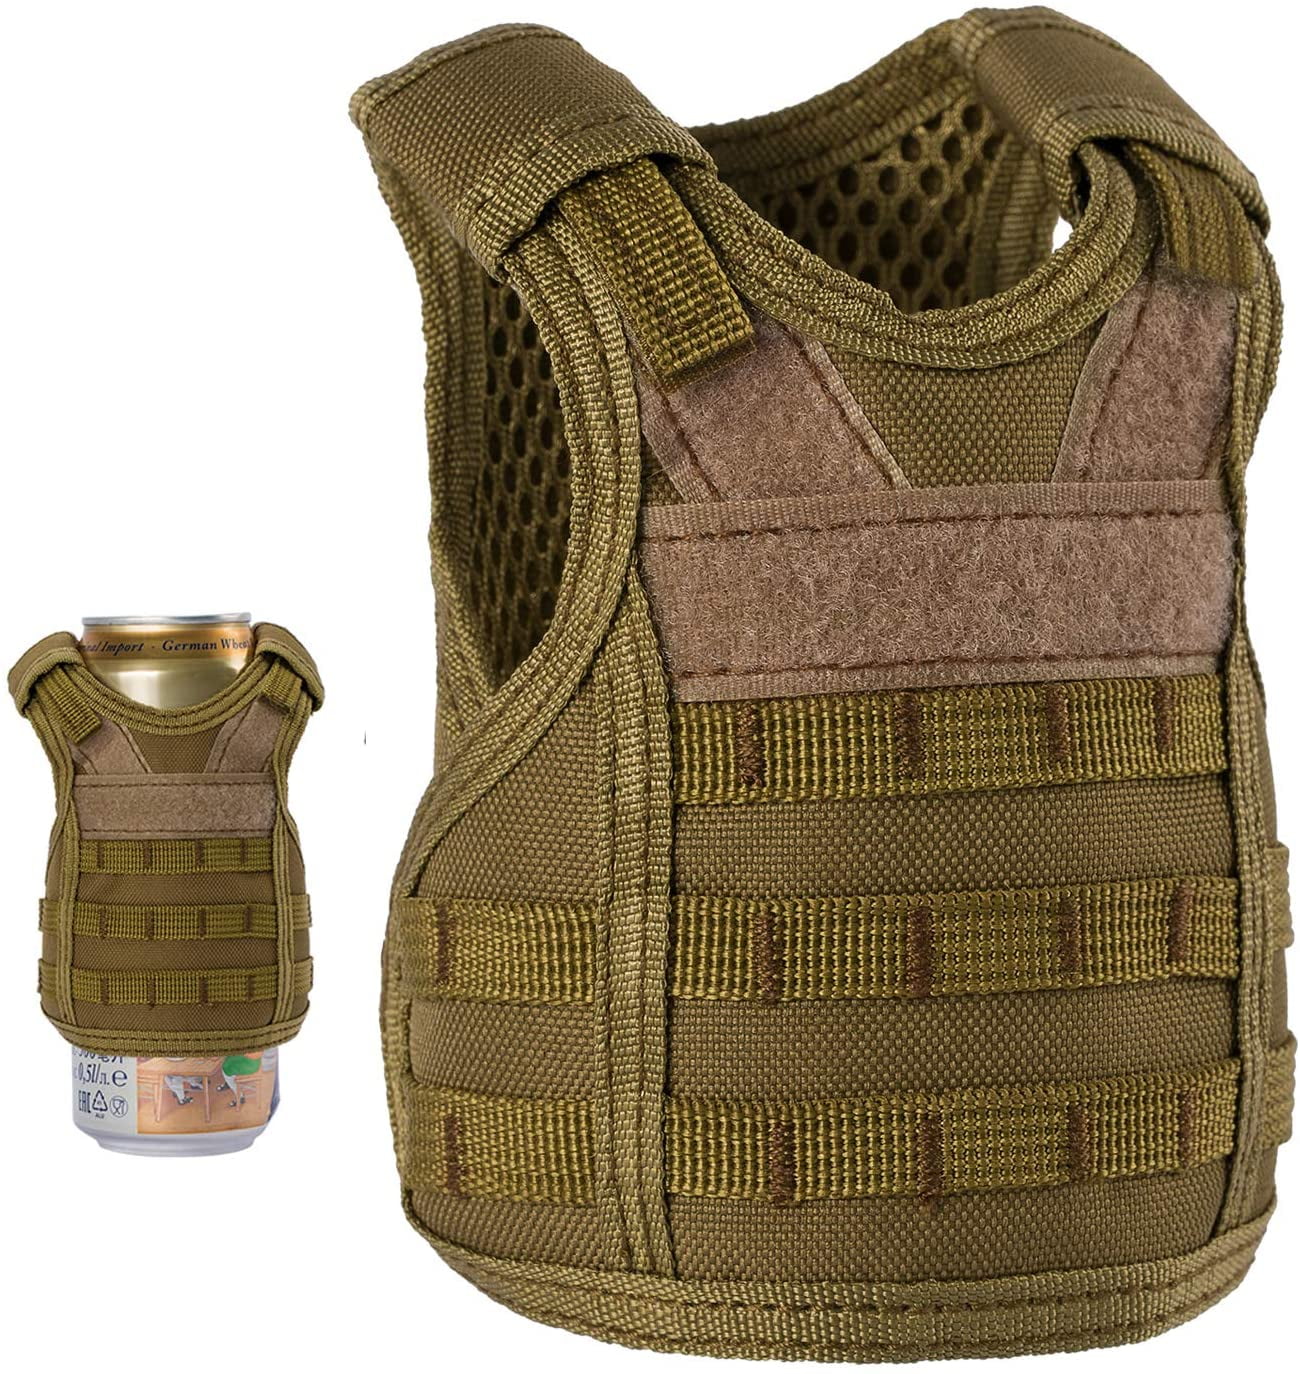 Black Selighting Bottle Cans Coller Sleeve Adjustable Beverage Holder Mini Tactical Vest for 12oz or 16oz Cans Bottles Decoration